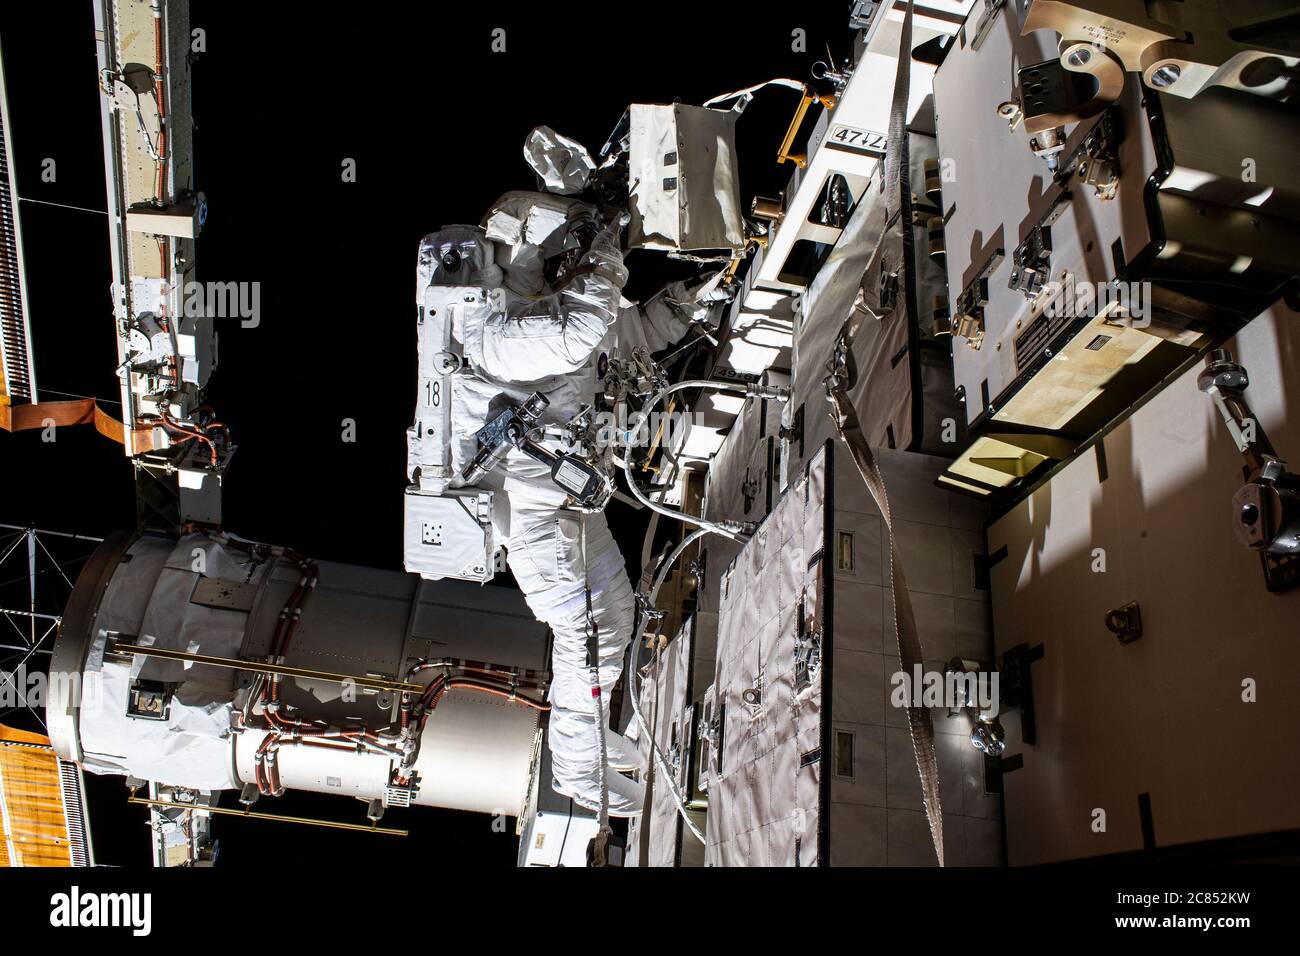 Washington, Stati Uniti. 21 luglio 2020. Il 26 giugno 2020, gli astronauti della NASA Bob Behnken e Chris Cassidy hanno condotto la prima di due passerelle spaziali per scambiare le batterie e aggiornare i sistemi di alimentazione sulla struttura a truss Starboard-6 della Stazione spaziale Internazionale. Behnken è qui raffigurato durante l'escursione di sei ore e sette minuti. I due astronauti hanno condotto una seconda passeggiata spaziale il 1 luglio per completare gli aggiornamenti. Crediti NASA/UPI: Notizie dal vivo UPI/Alamy Foto Stock